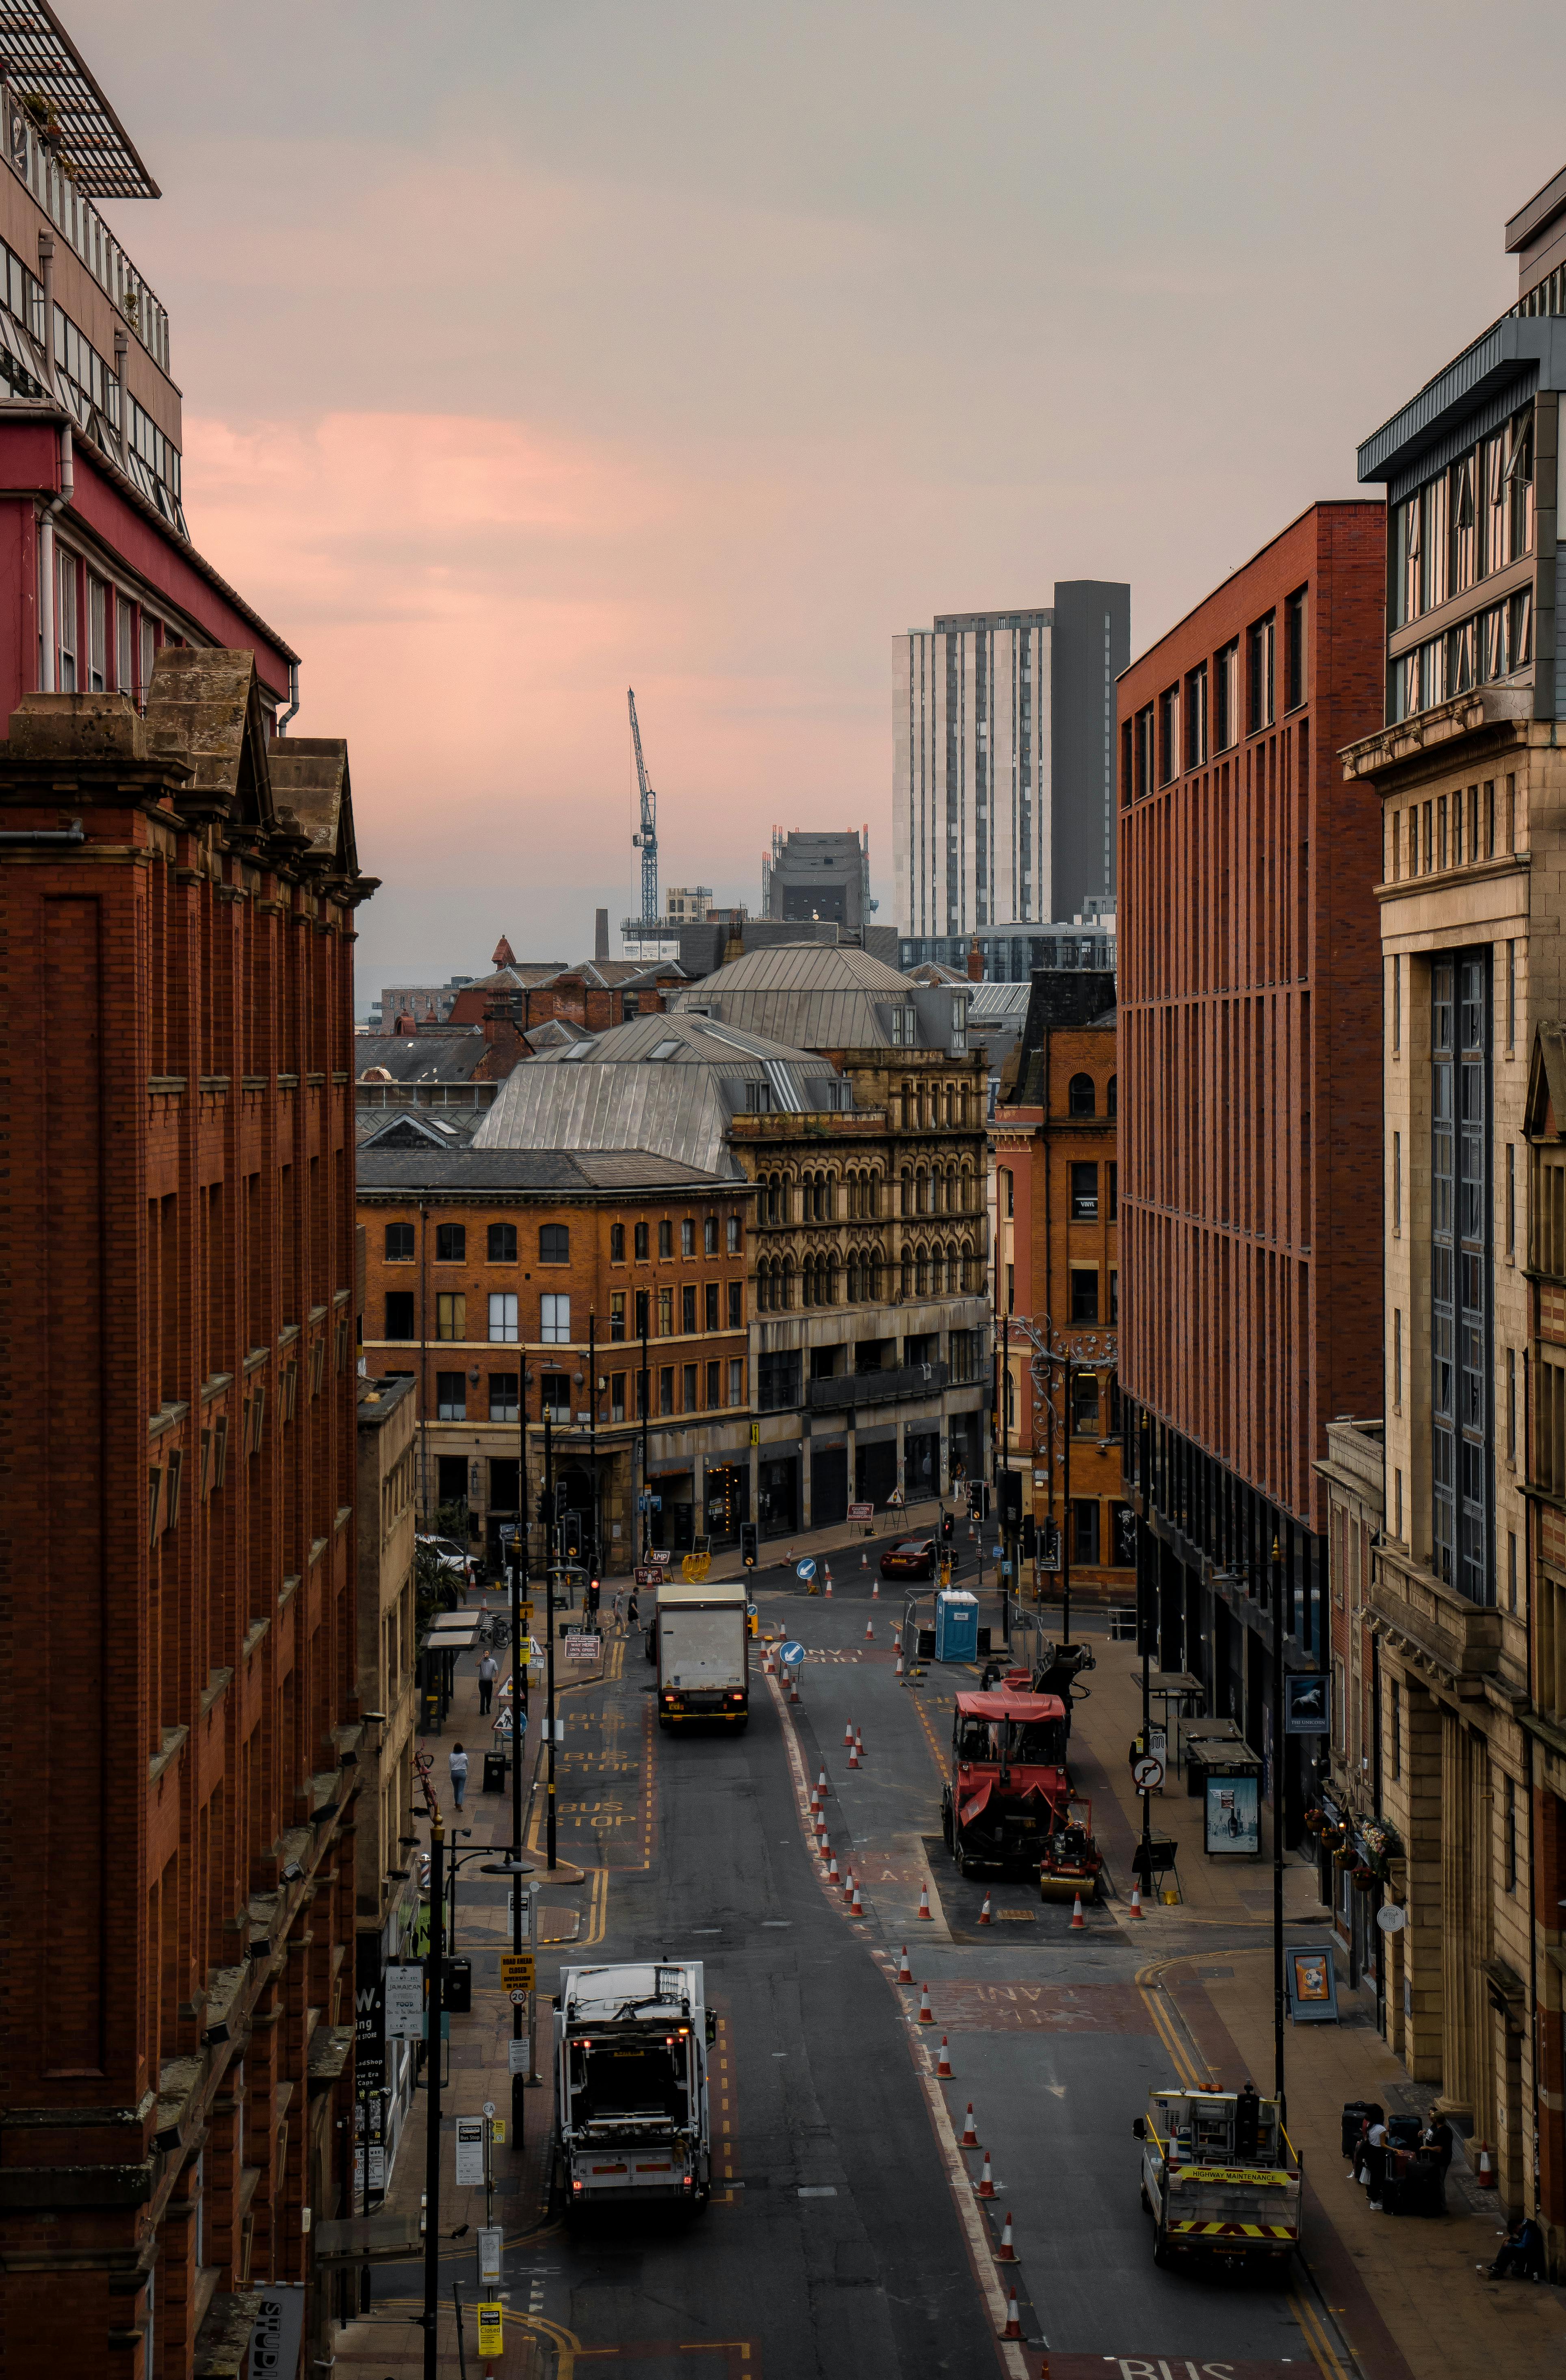 300.000+ ảnh đẹp nhất về Thành Phố Manchester: ảnh cảnh đẹp đường phố Thành Phố Manchester đã từng là vùng đất của những nhà máy công nghiệp nhưng giờ đây đã trở thành một thành phố đầy năng động và sôi động. Bộ sưu tập ảnh cảnh đẹp đường phố về Thành Phố Manchester của chúng tôi sẽ cho bạn những hình ảnh đẹp nhất về thành phố này.